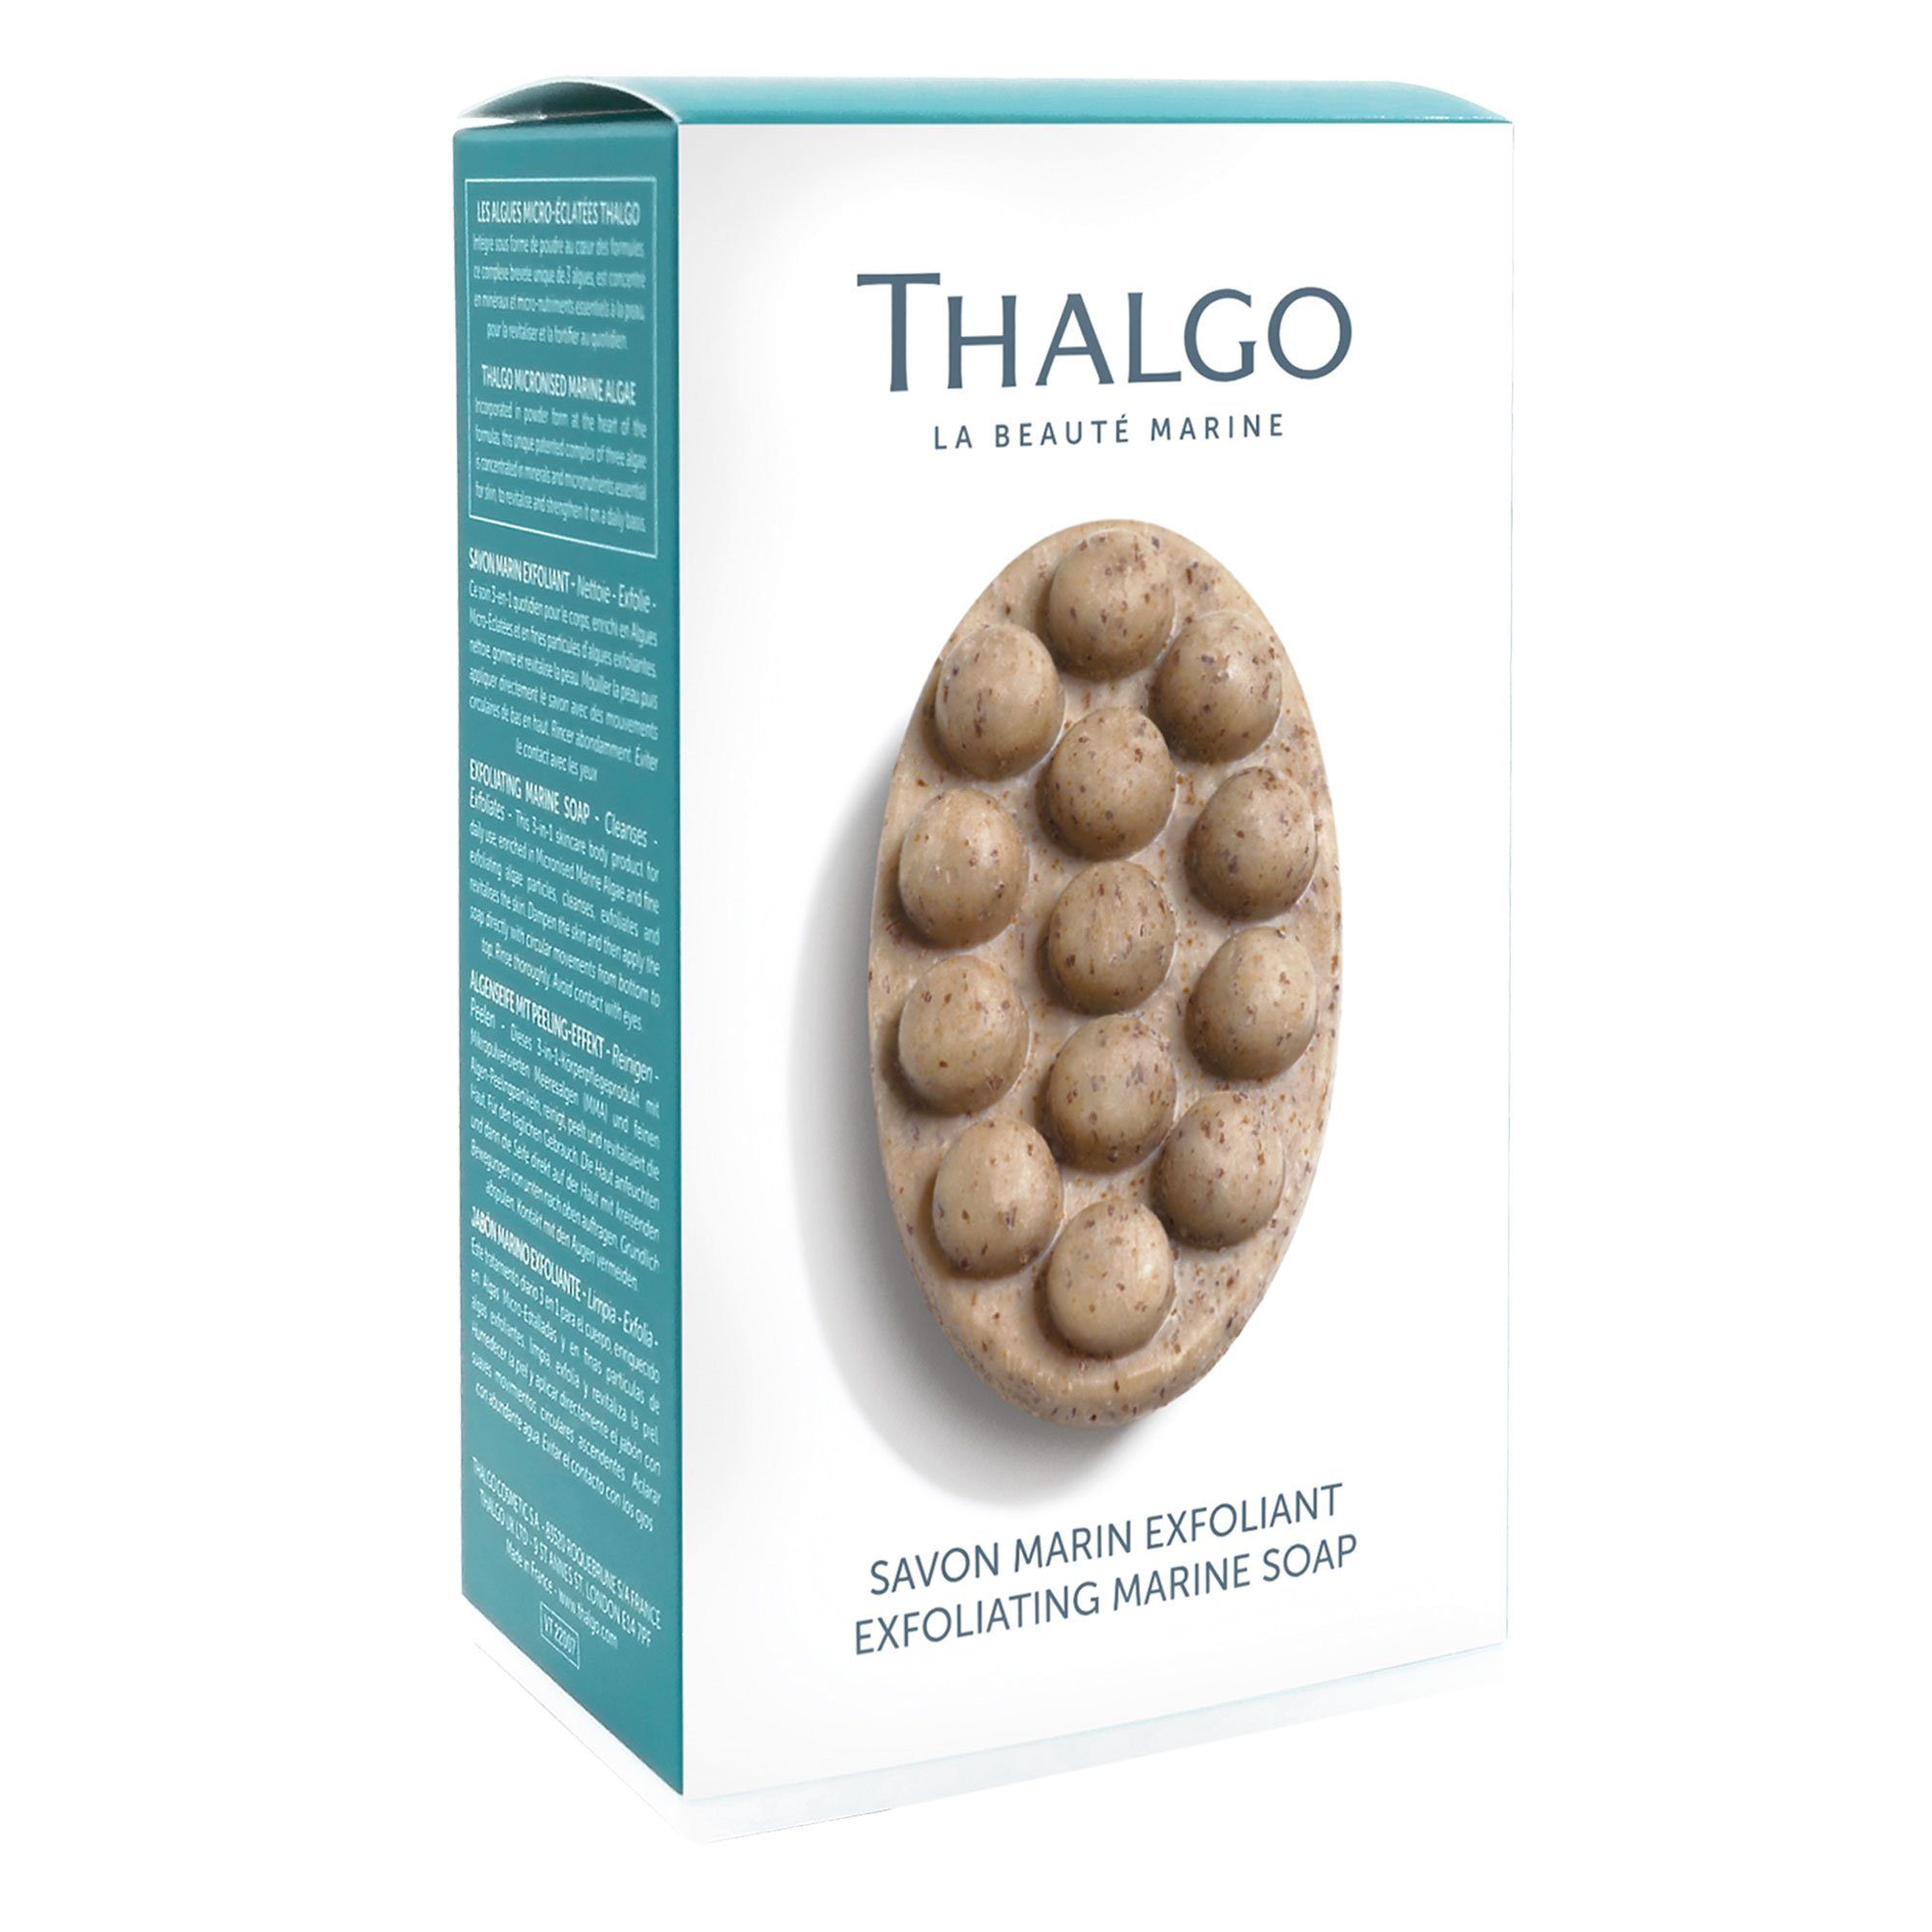 mit Feste 150g Peeling-Effekt, Marine Duschseife Essentials Algen-Seife 3-IN-1 THALGO